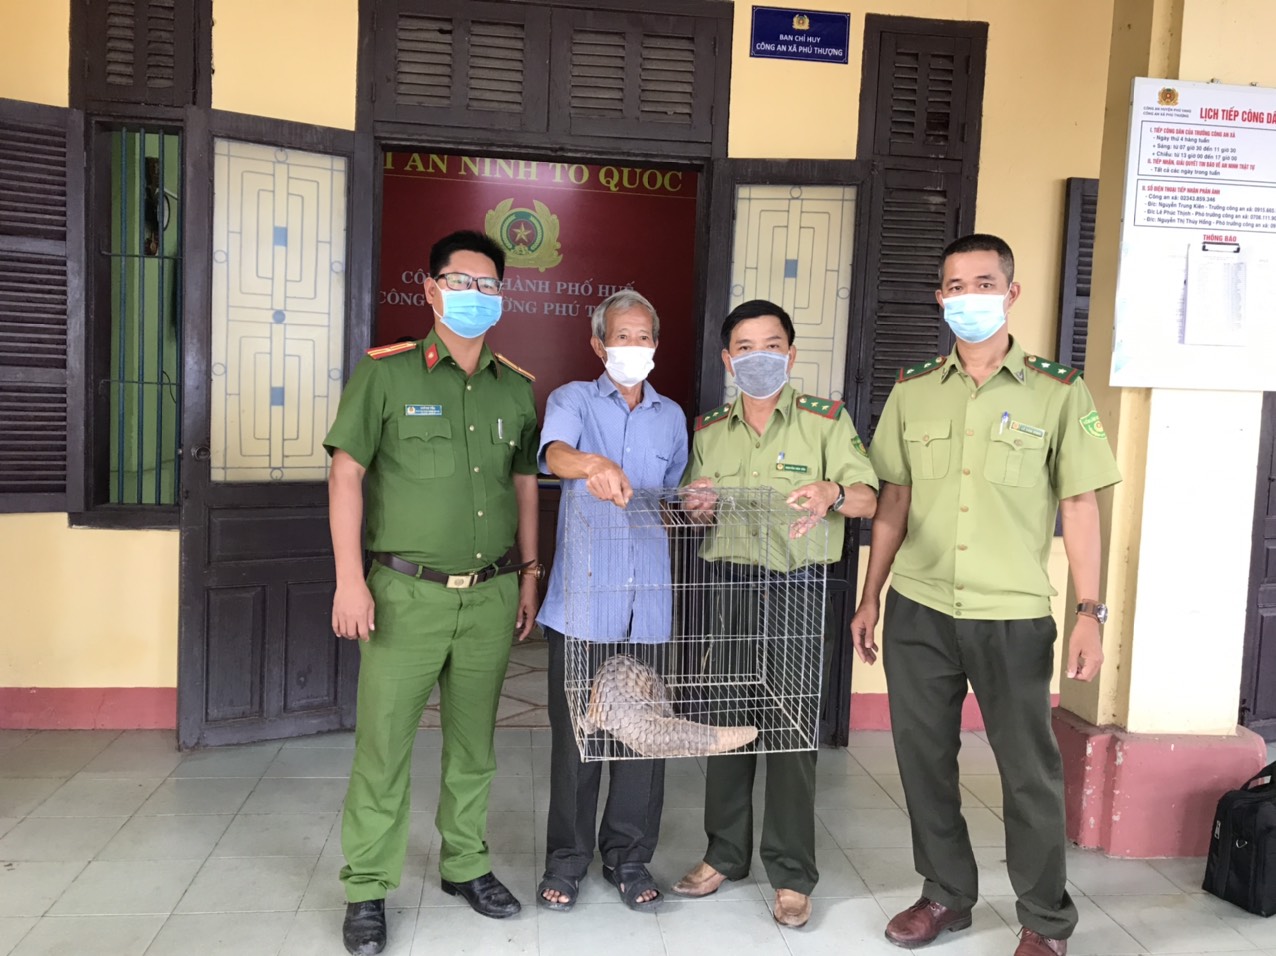 Ông Thuận phát hiện cá thể tê tê đang đi lang thang trước cổng nhà ở lô B40, khu đô thị Phú Mỹ Thượng, phường Phú Thượng và đã tiến hành bàn giao cho lực lượng chức năng.